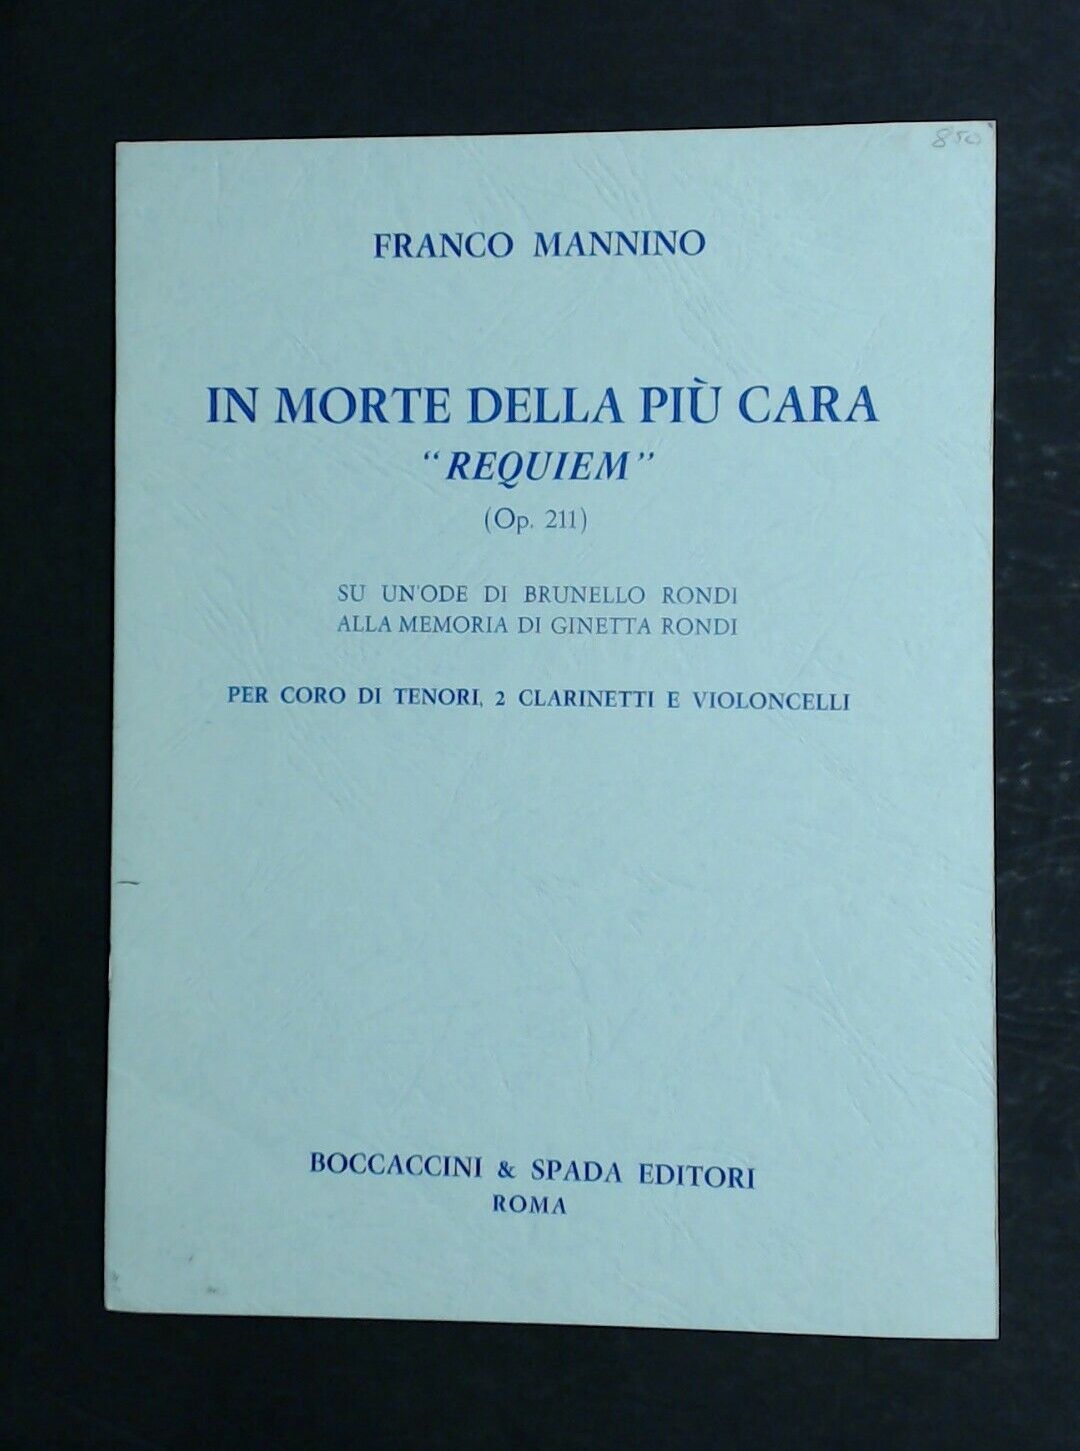 Franco Mannino In Morte Della Piu Cara "Requeim" Tenor Choir, - Click Image to Close